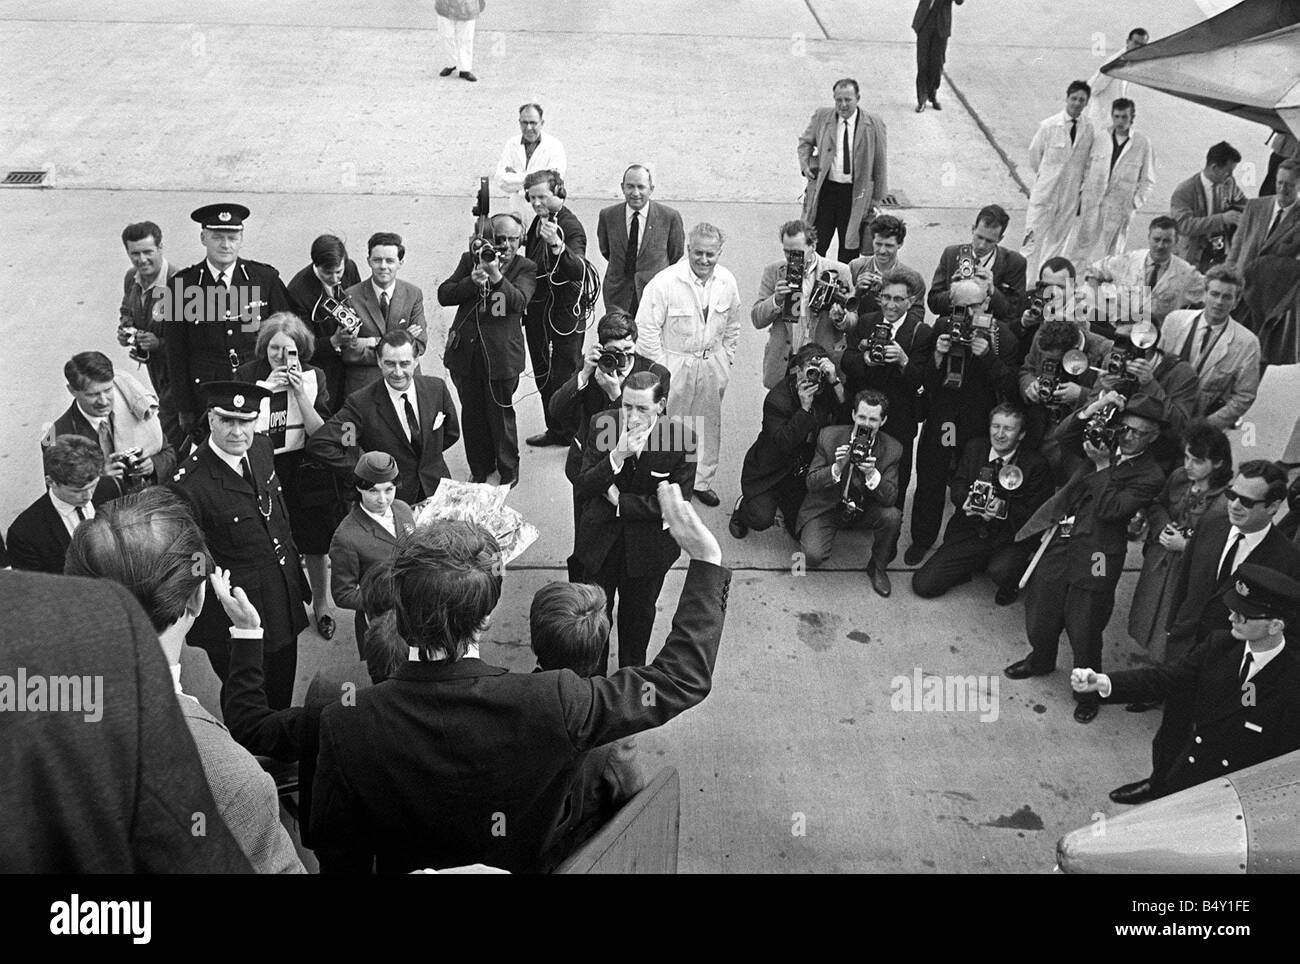 Gruppo pop The Beatles Luglio 1964 John Lennon Paul McCartney Ringo Starr George Harrison Beatles arrivano all'aeroporto di Liverpool Northern Premiere di una giornata intensa di notte Foto Stock